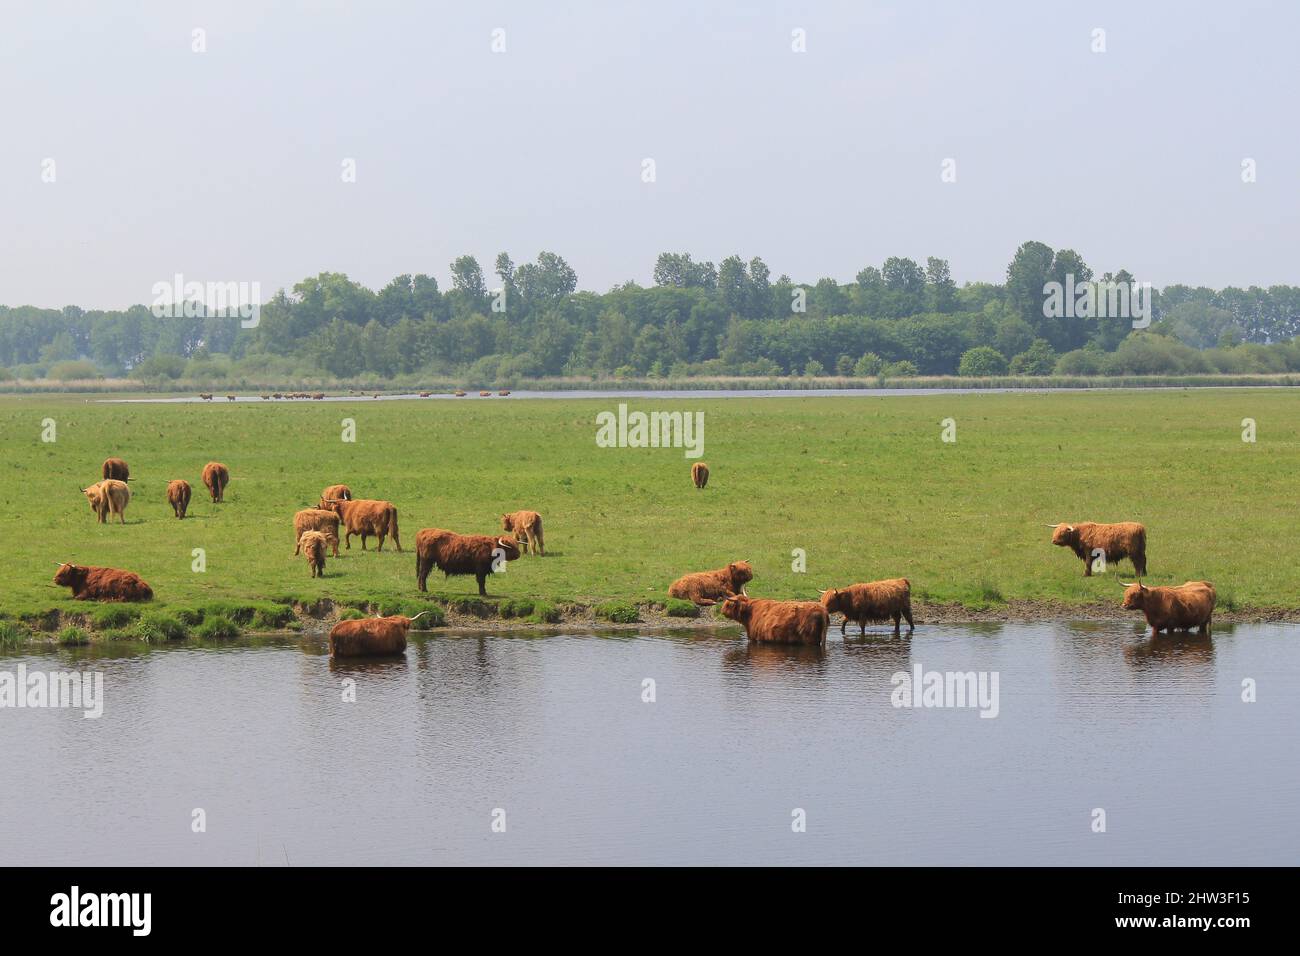 un troupeau de vaches d'altitude brunes se baignent dans l'eau le long d'un pré vert lors d'une journée chaude au printemps en hollande Banque D'Images